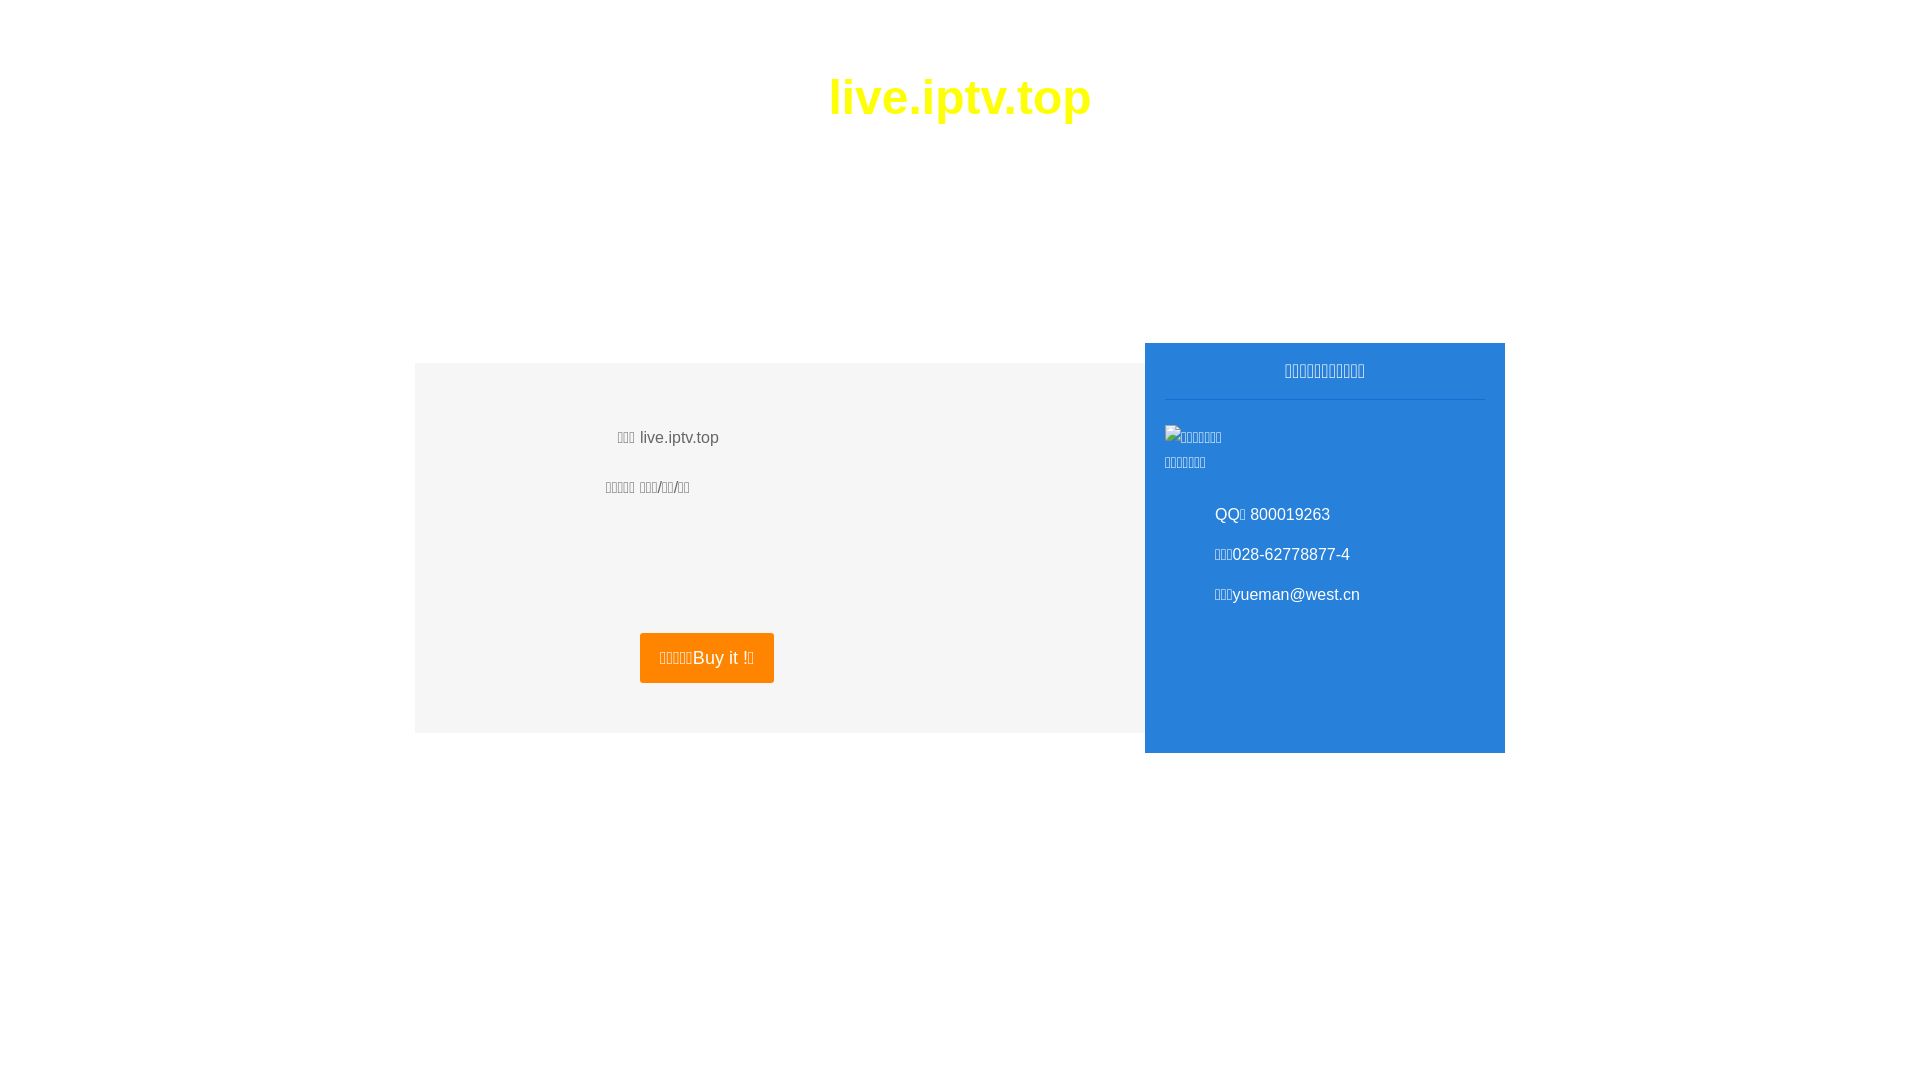 Website status live.iptv.top is   ONLINE